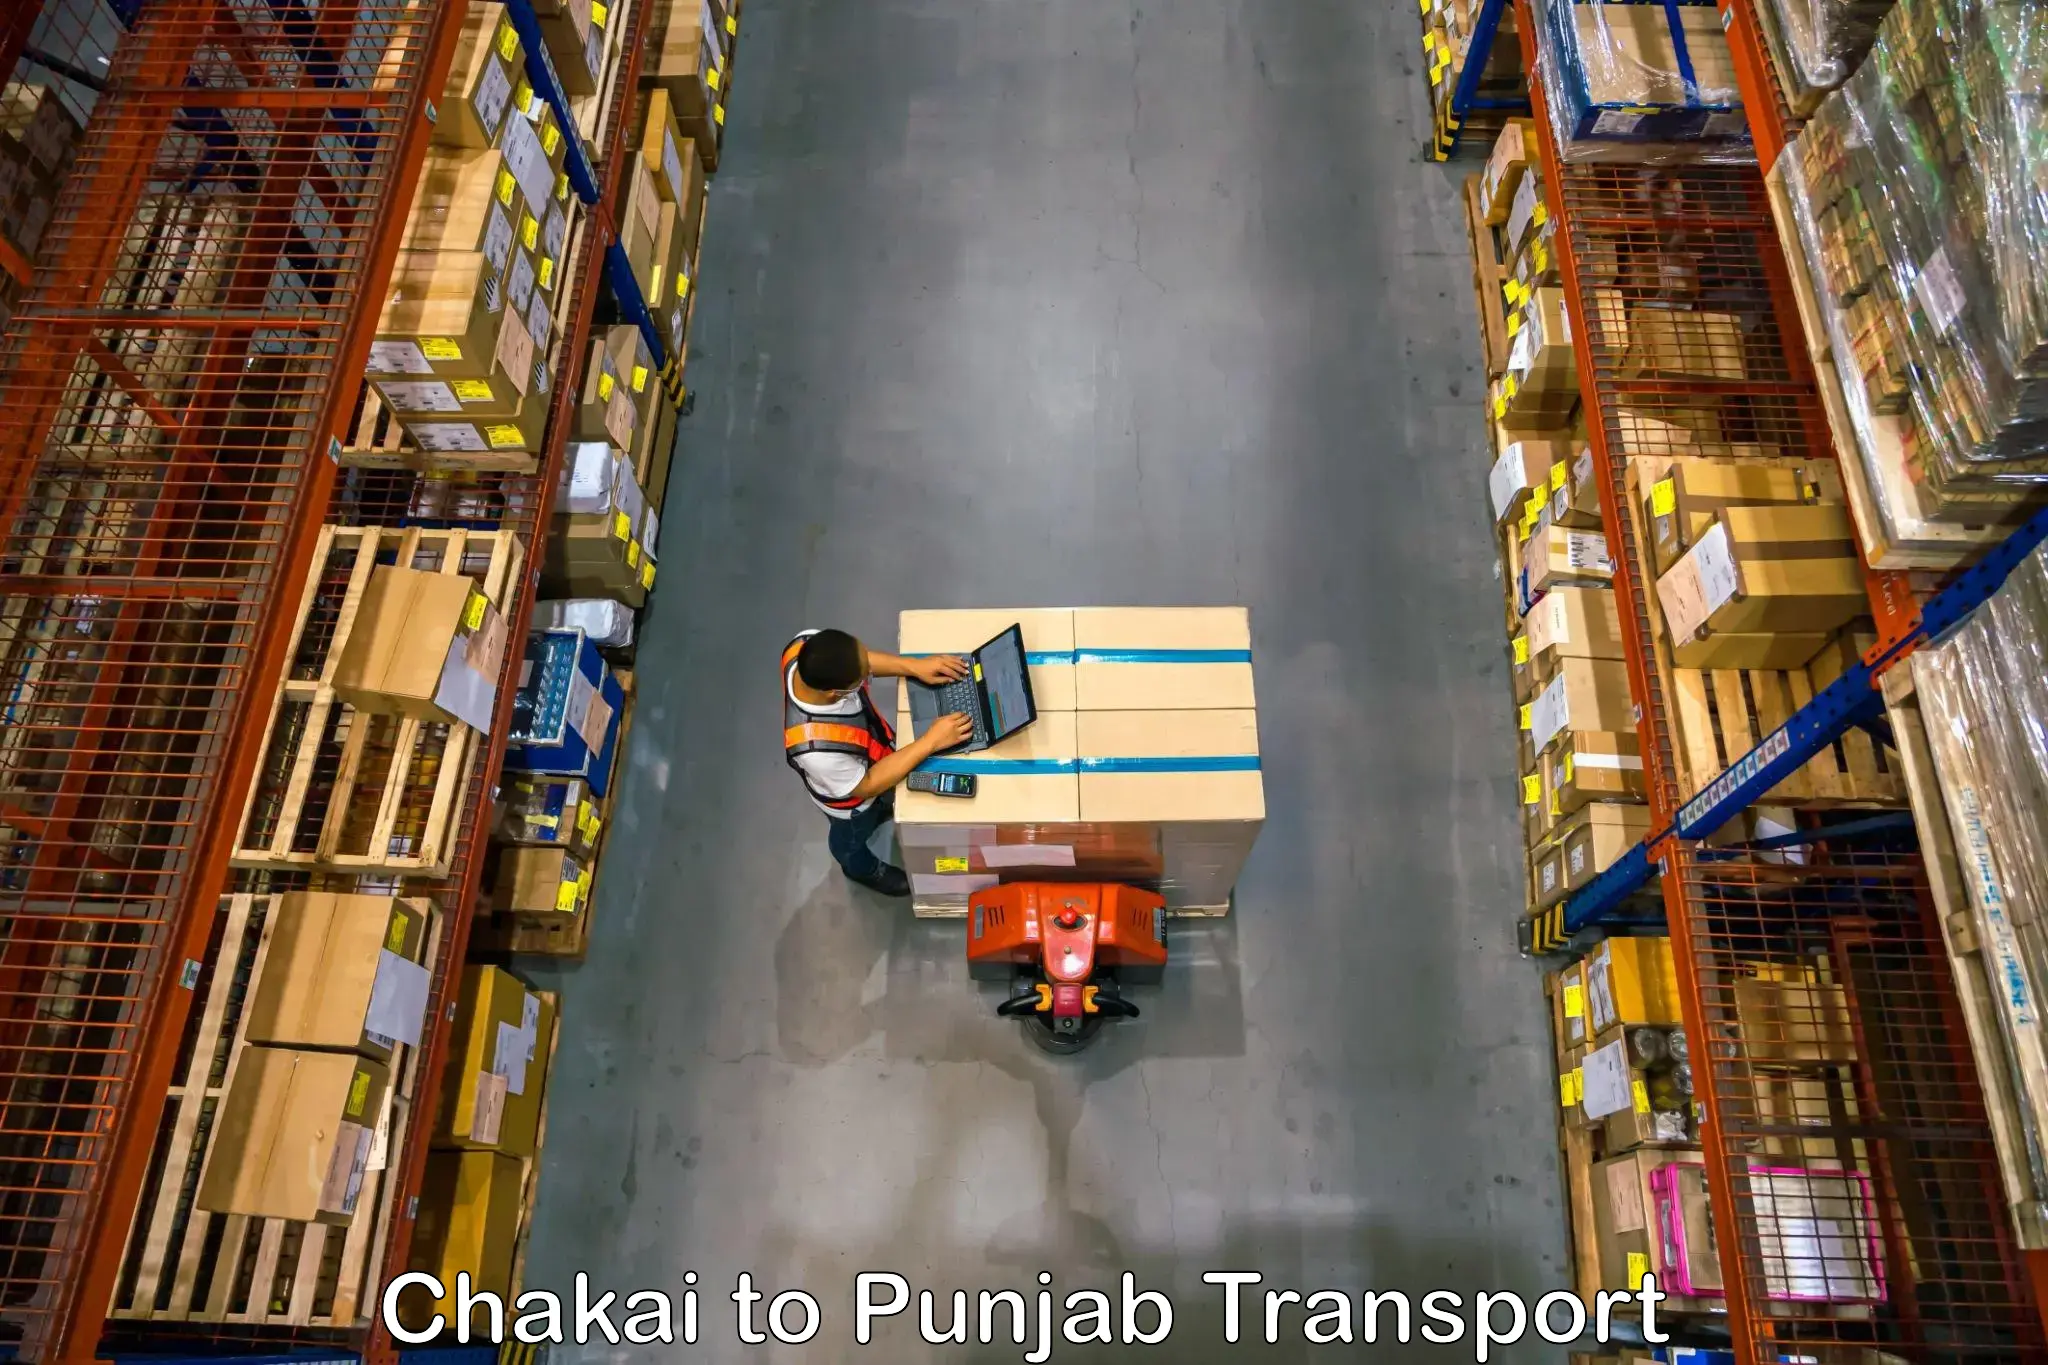 Delivery service Chakai to Dera Bassi